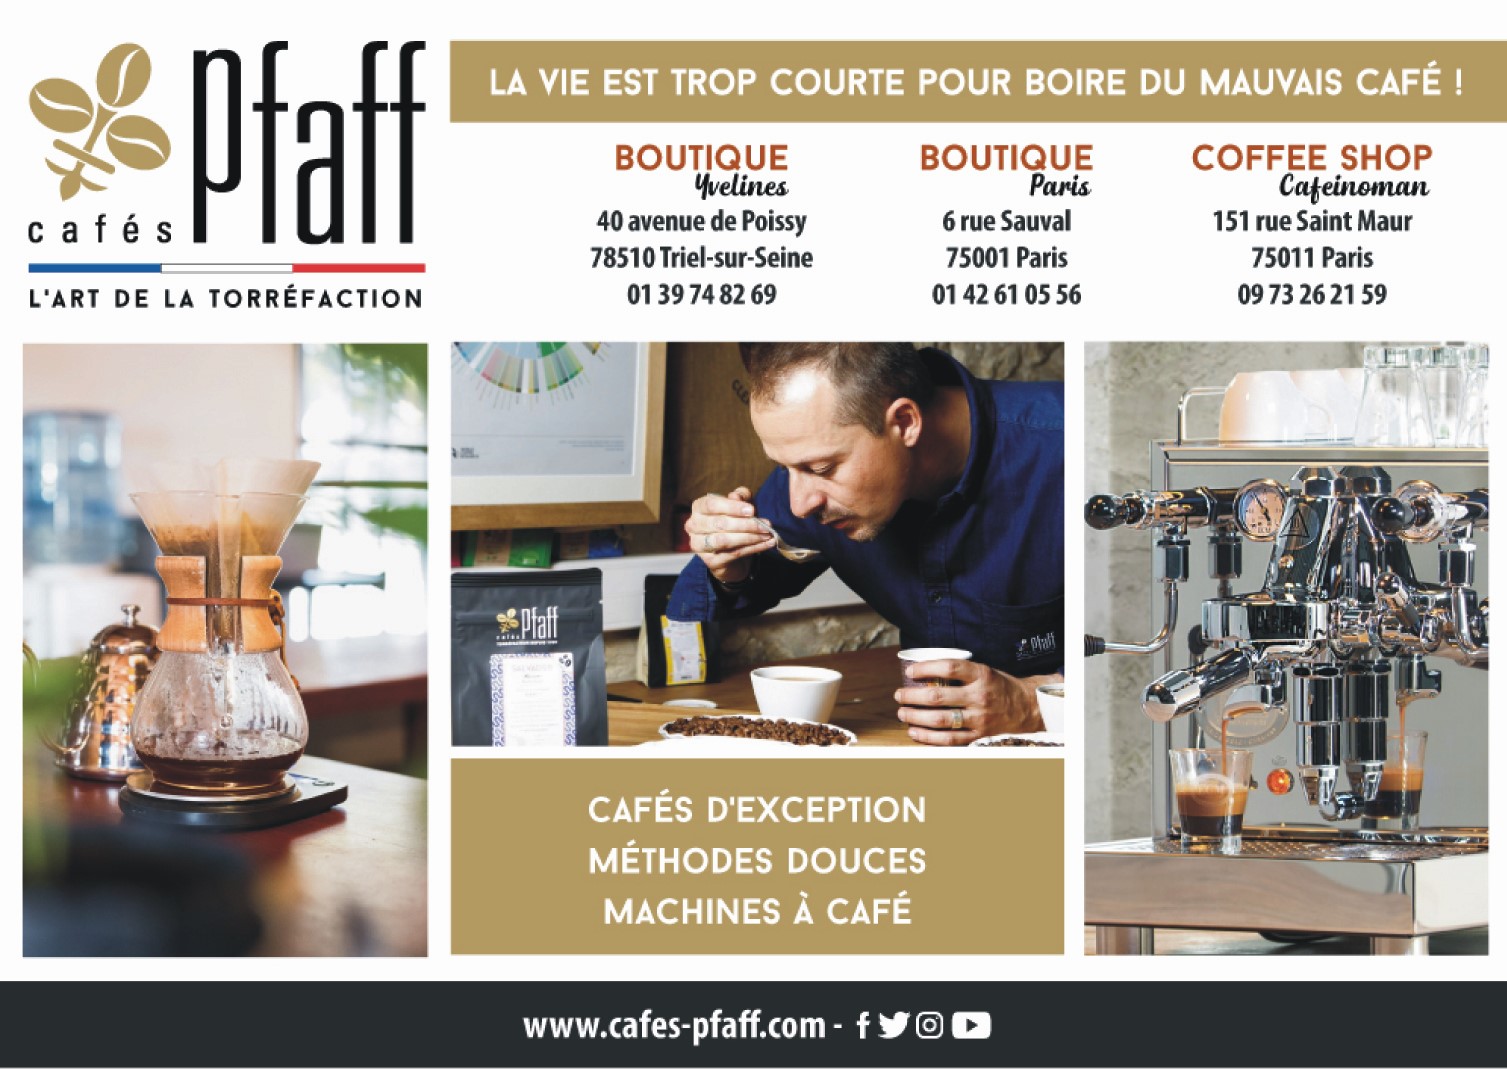 CAFE PFAFF 2018